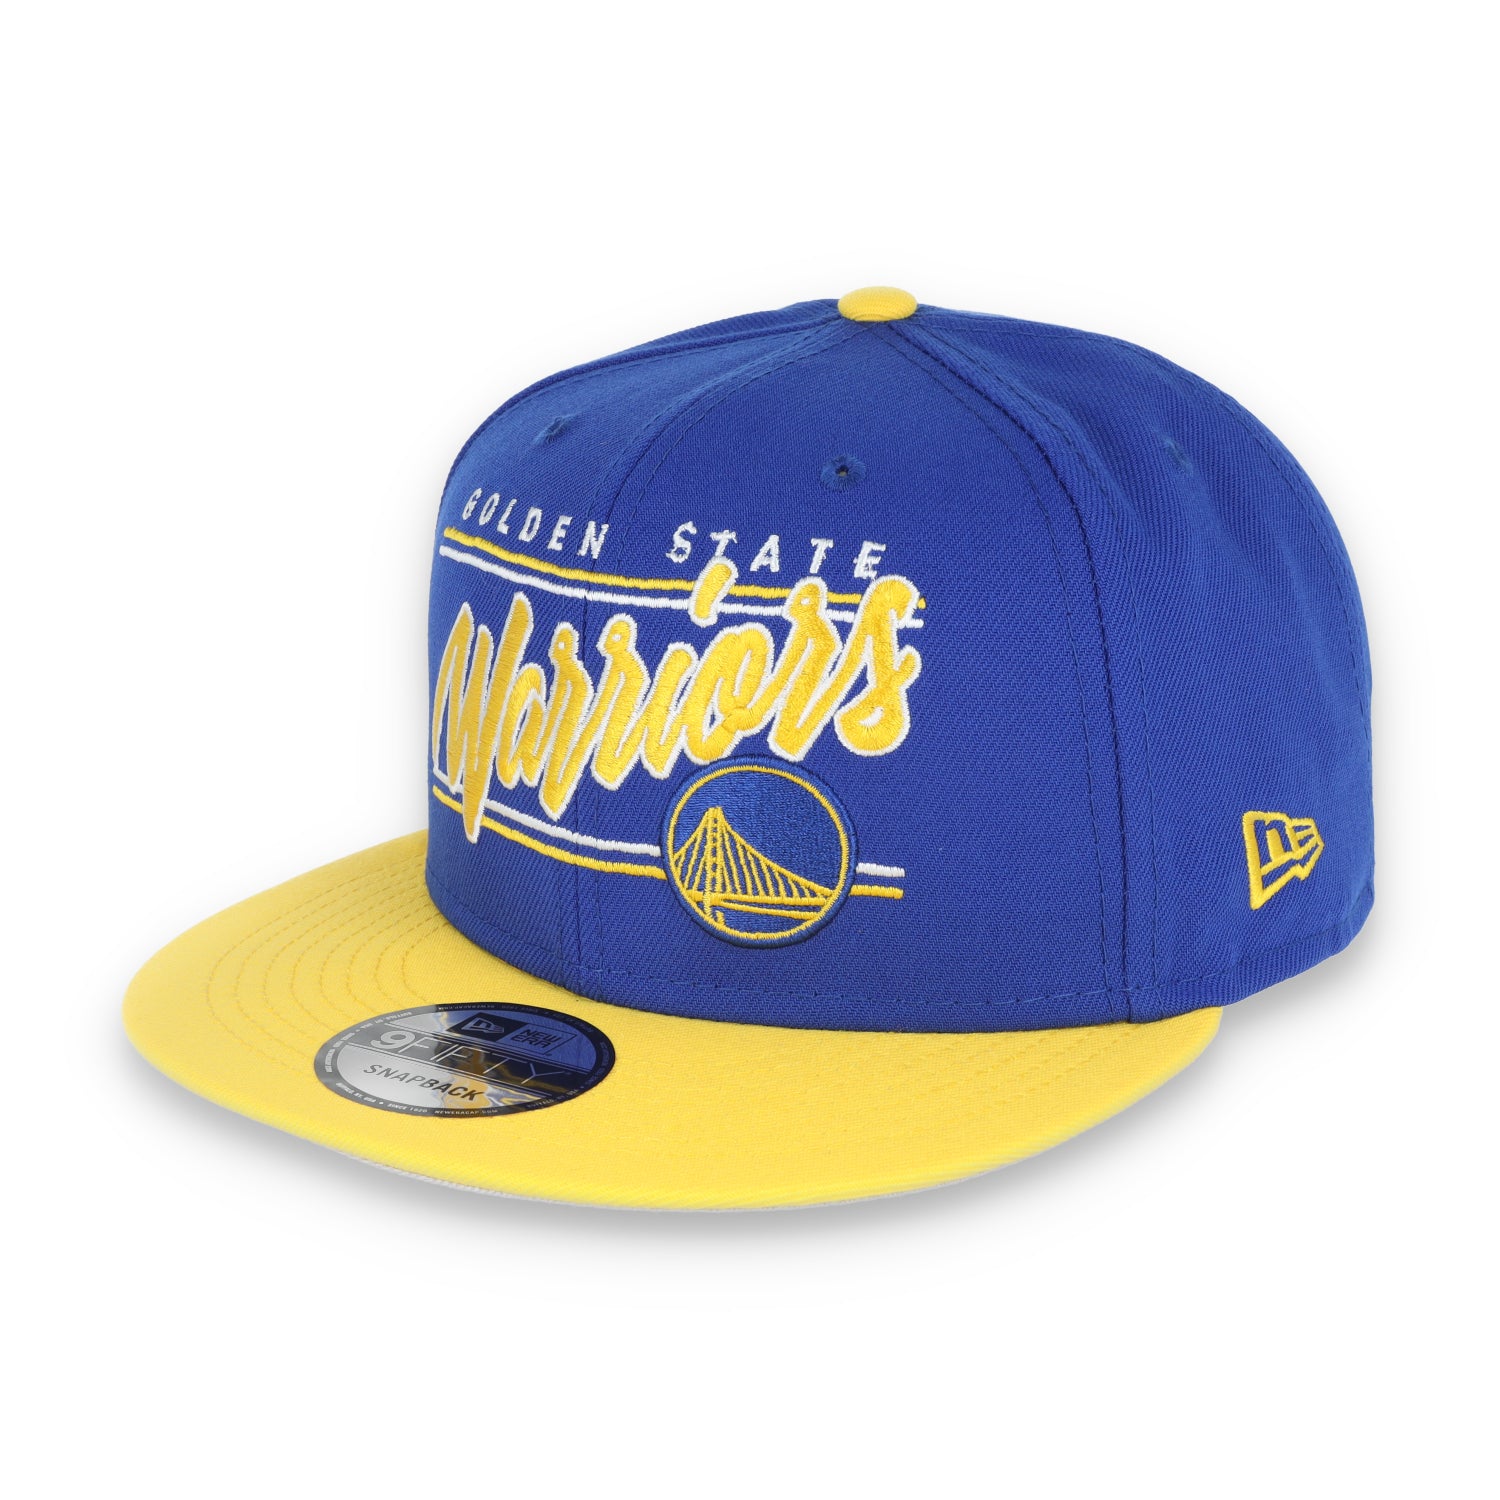 New Era Golden State Warriors Team Script 9FIFTY Snap Hat